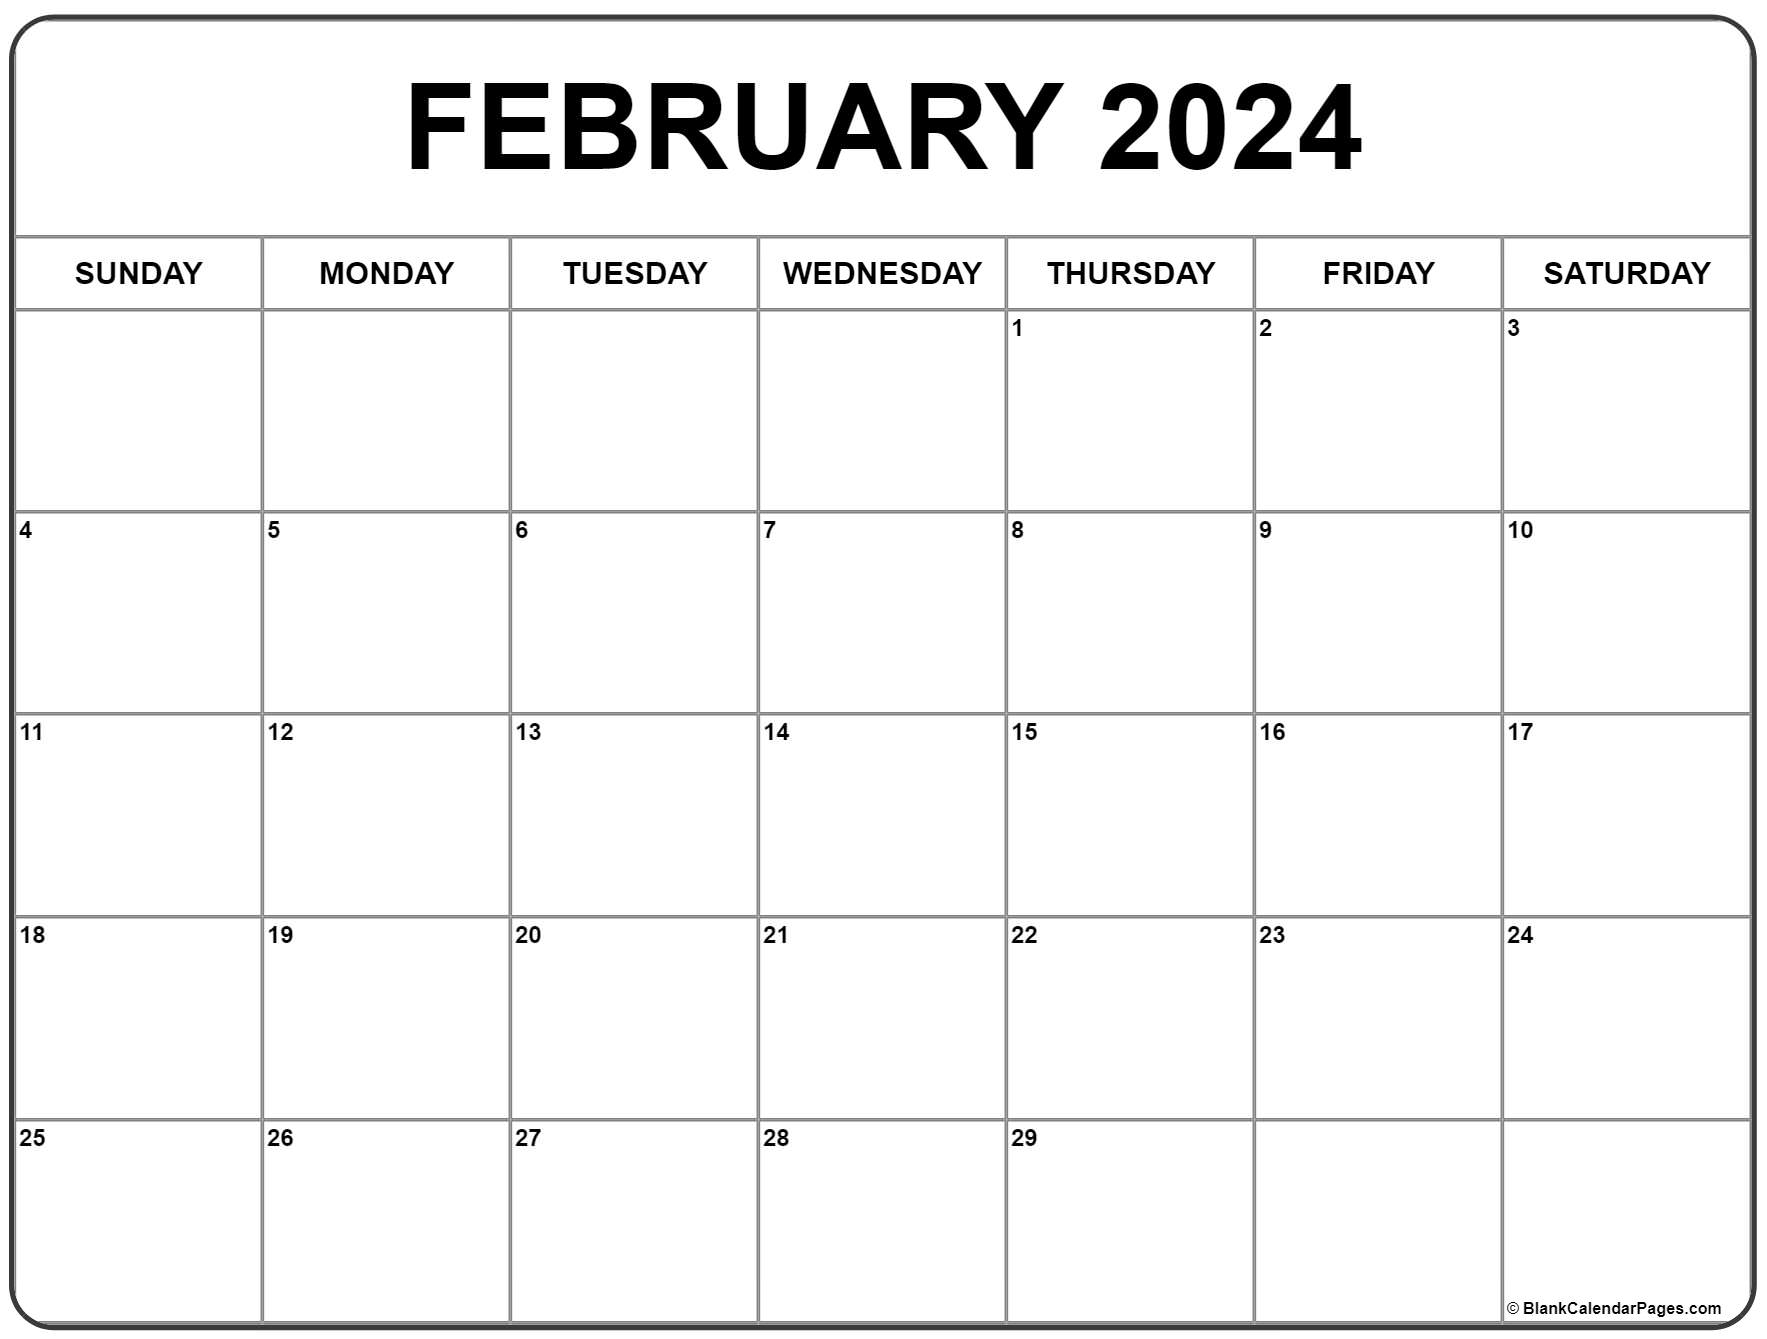 February 2024 Calendar | Free Printable Calendar for Calendar Feb 2024 Printable Free